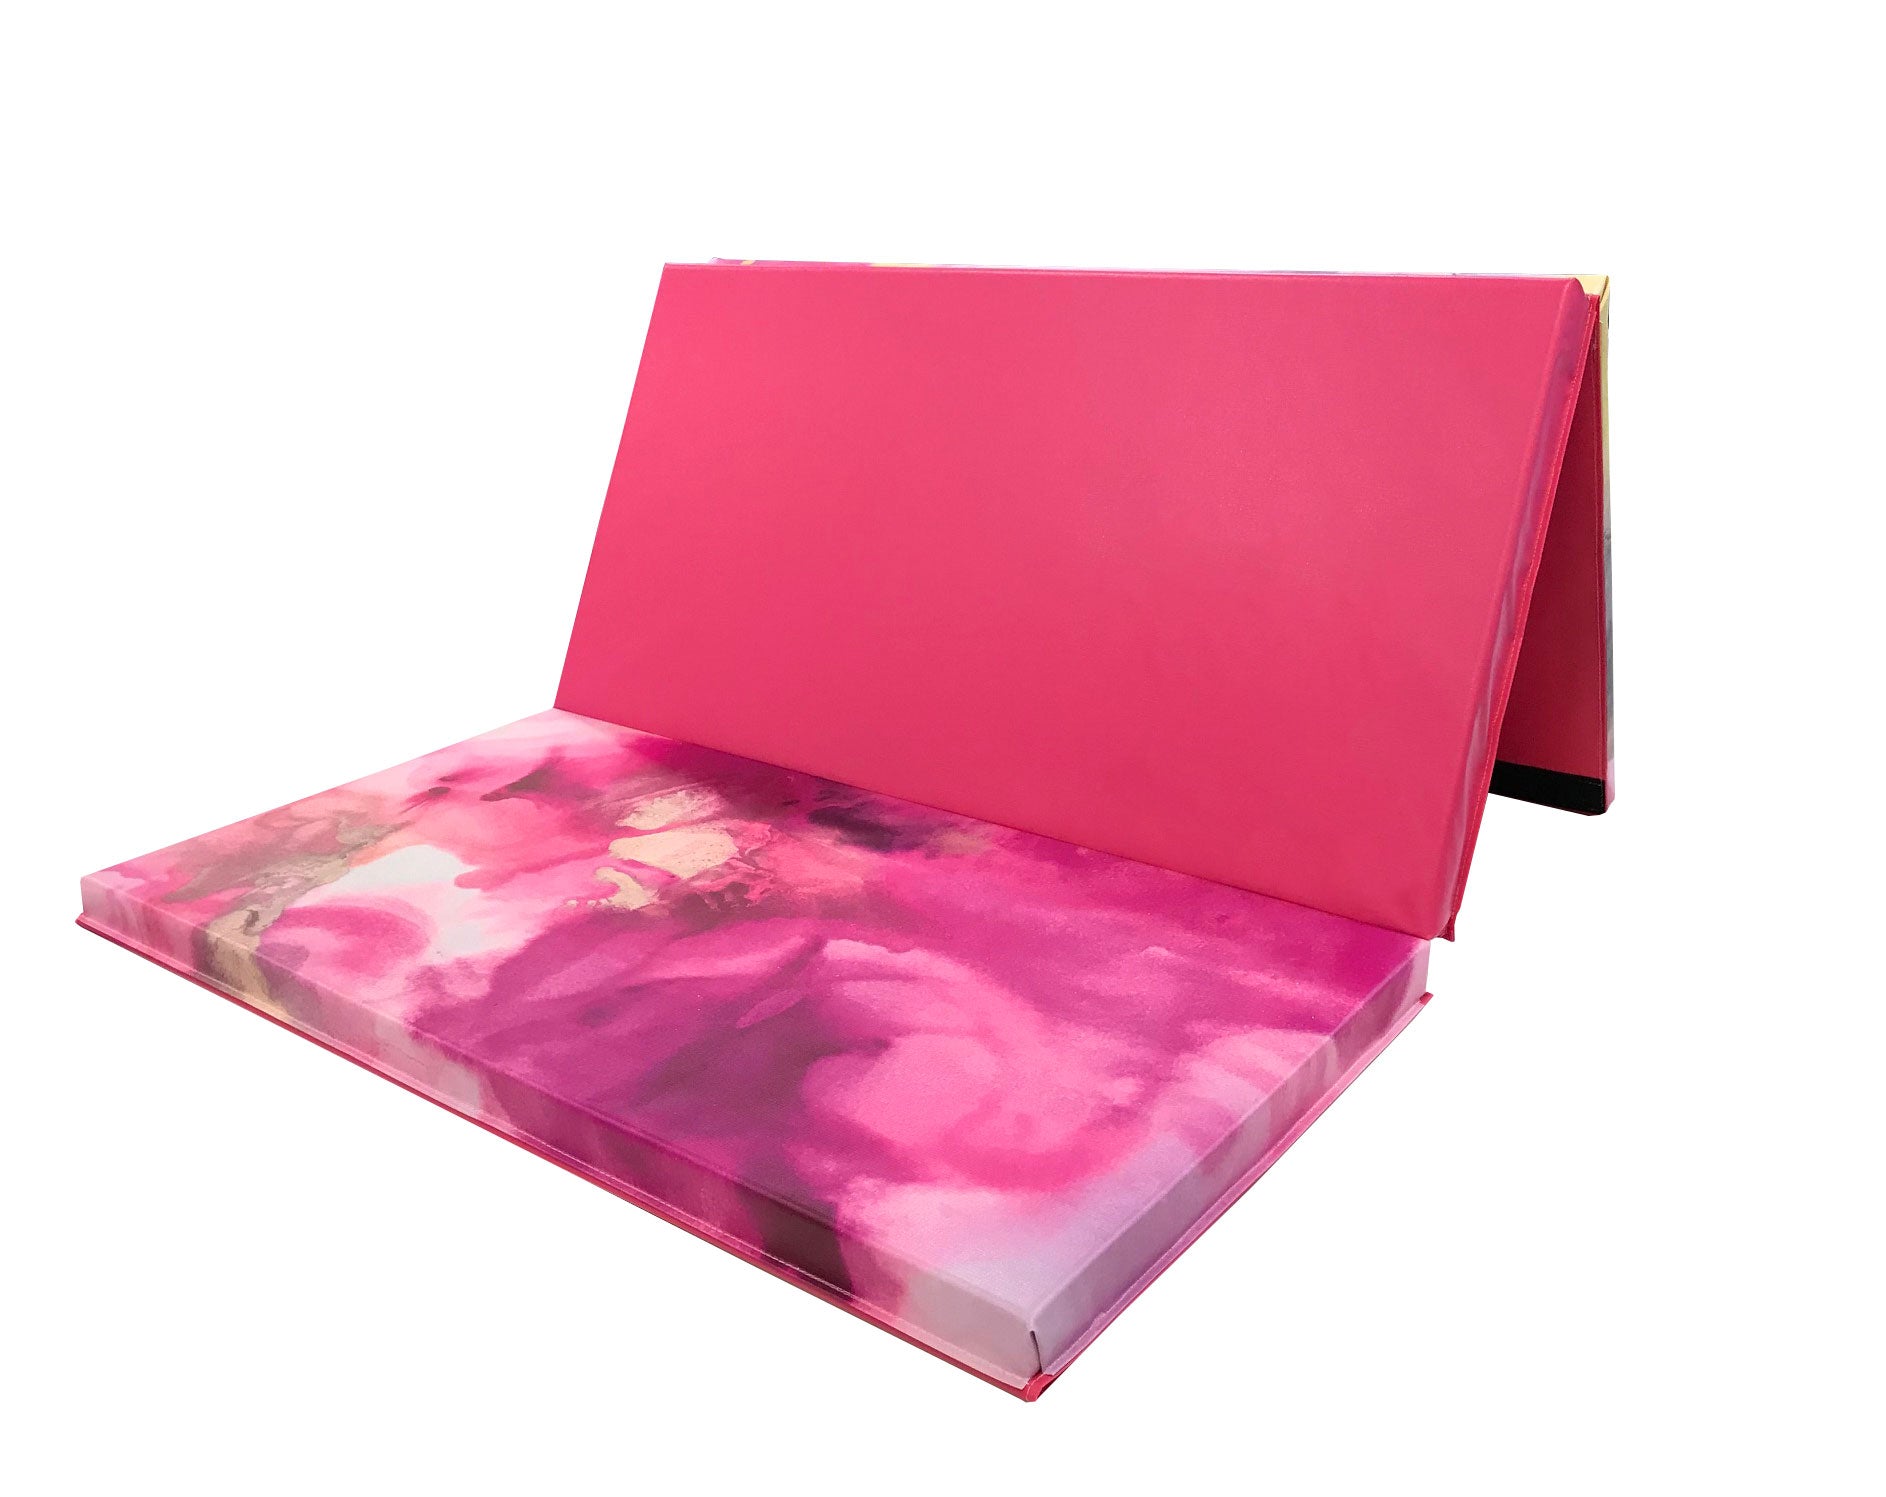 pink folding gymnastics mat, pink gym mat